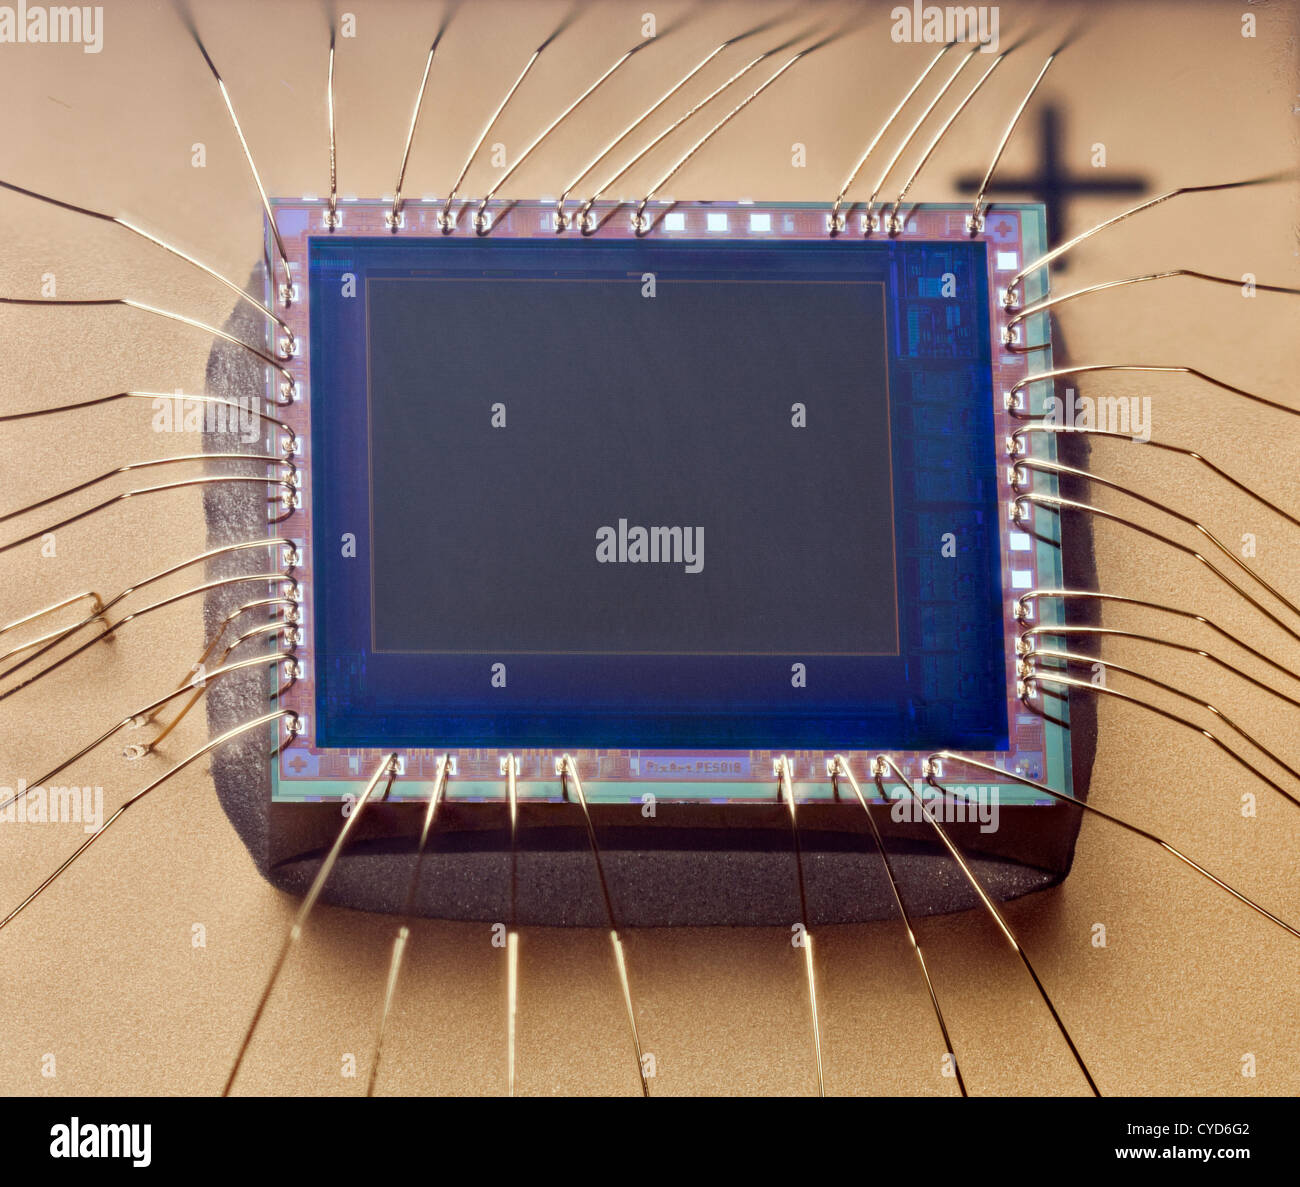 Winzigen CMOS-Chip auf ic-Board mit anschließen Kabel von einer Webcam-Kamera  Stockfotografie - Alamy